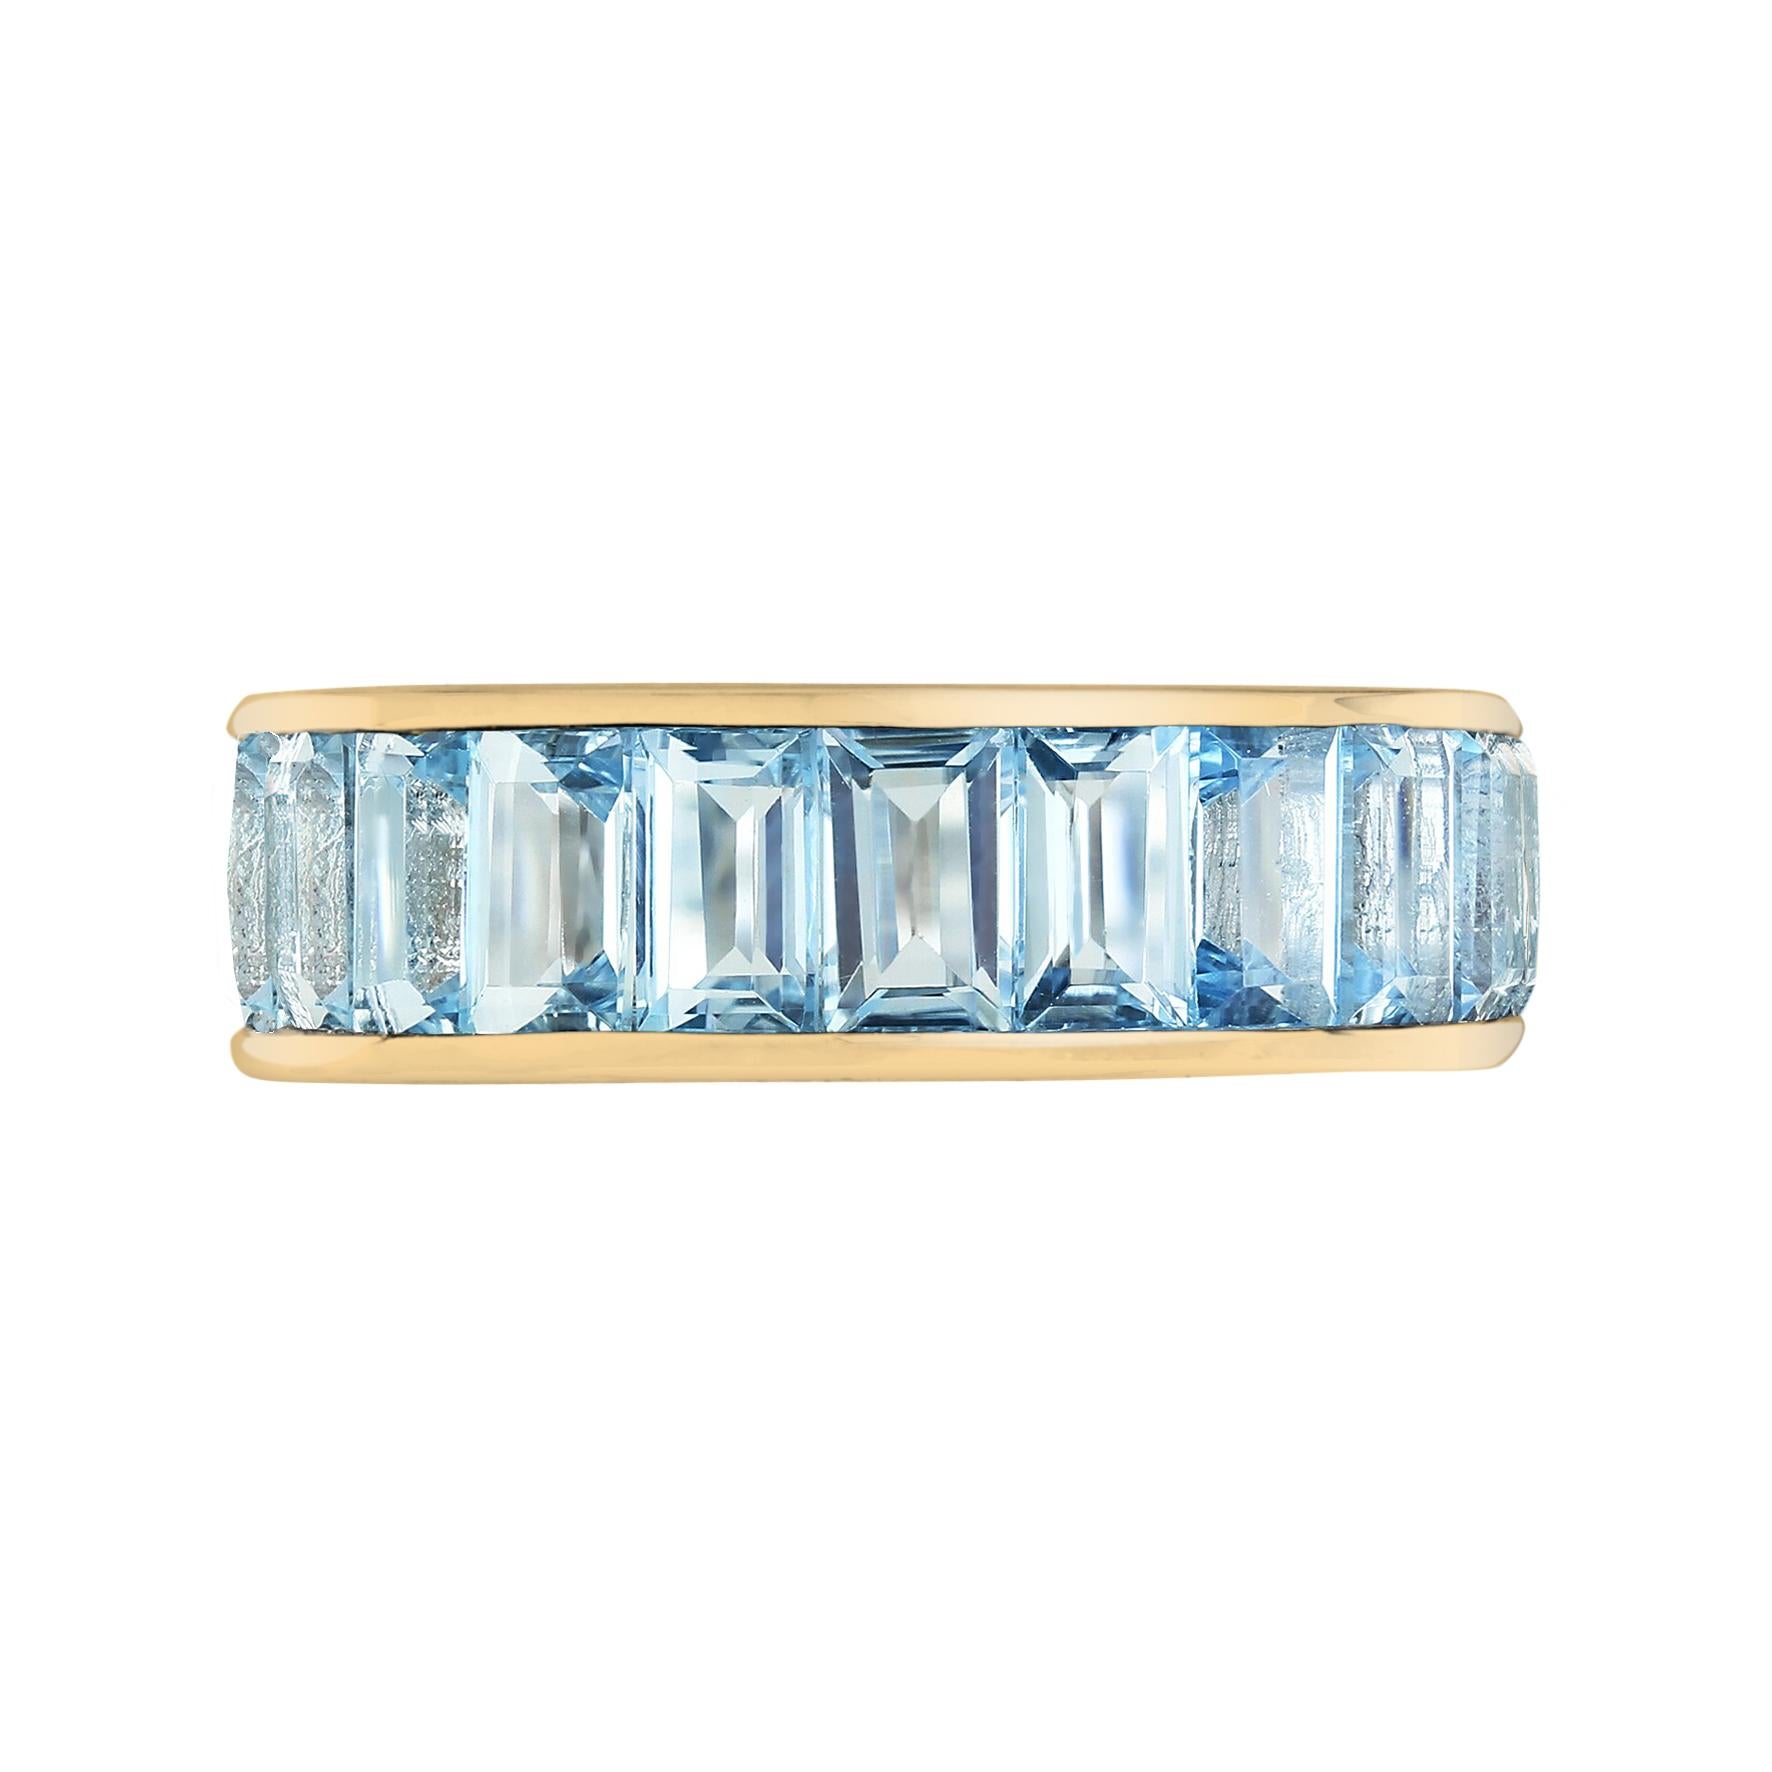 Ein Unisex-Ring, der jedes Outfit stilvoll aufwertet!

Dieser Blautopas-Ewigkeitsring ist die perfekte Ergänzung zu Ihrer Sammlung. Zweiundzwanzig Blautopase im Baguetteschliff sind vertikal in 18 Karat Gelbgold gefasst. Der Ring ist 6 mm breit, so